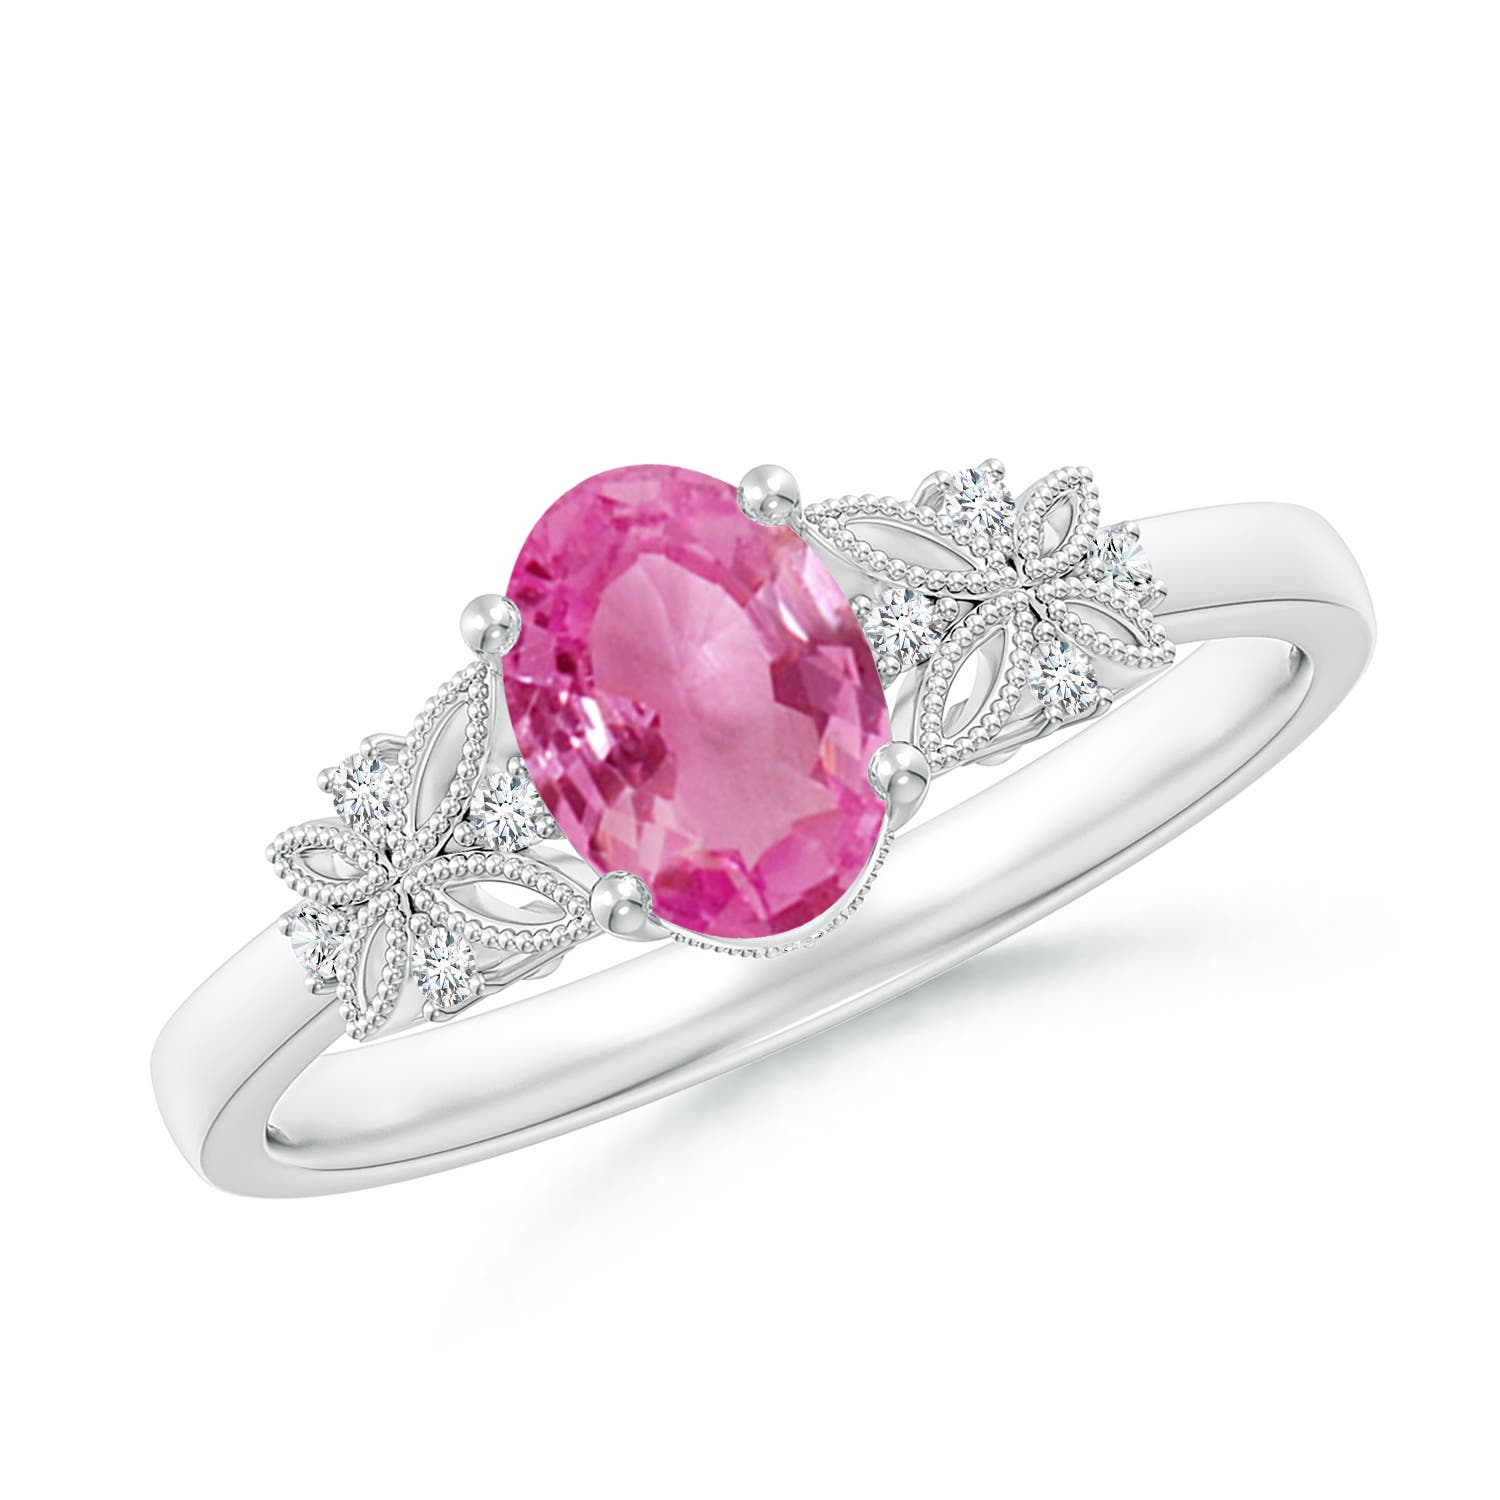  Angara Natural Pink Sapphire and Diamond Three Stone